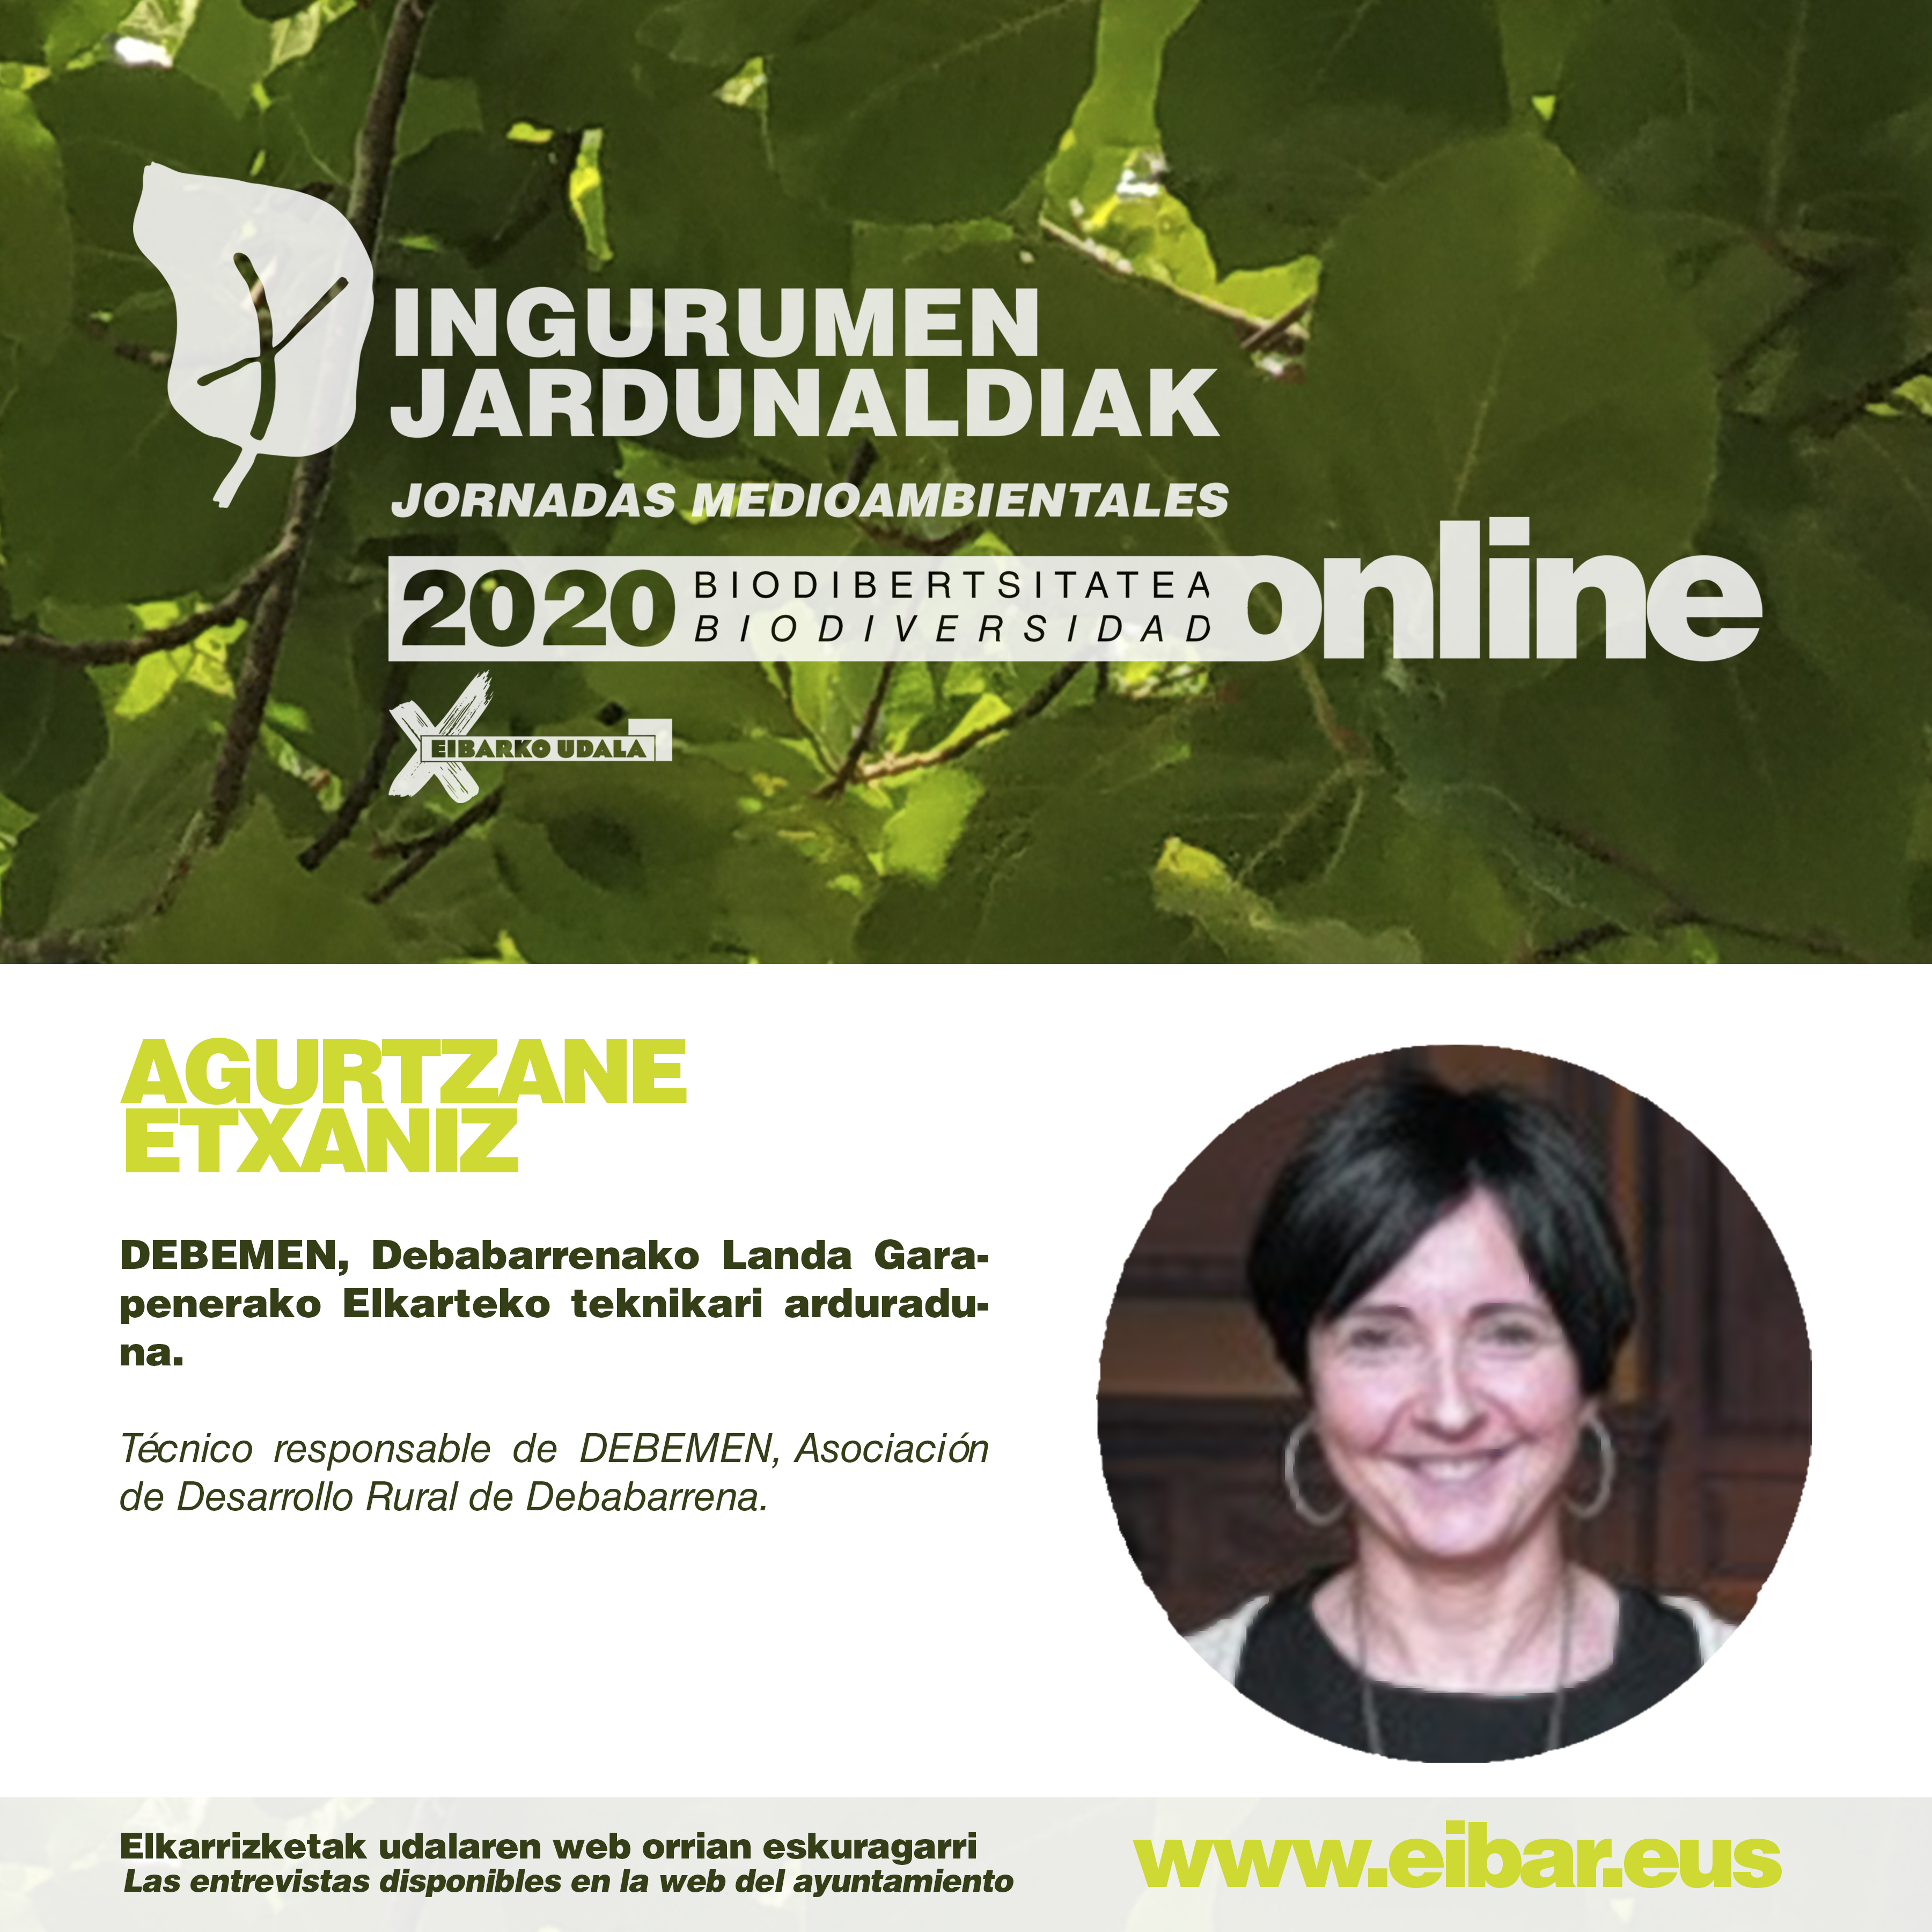 Jornadas Medioambientales: "Baserritarras, guardianas/es del medio ambiente", entrevista realizada a Agurtzane Etxaniz